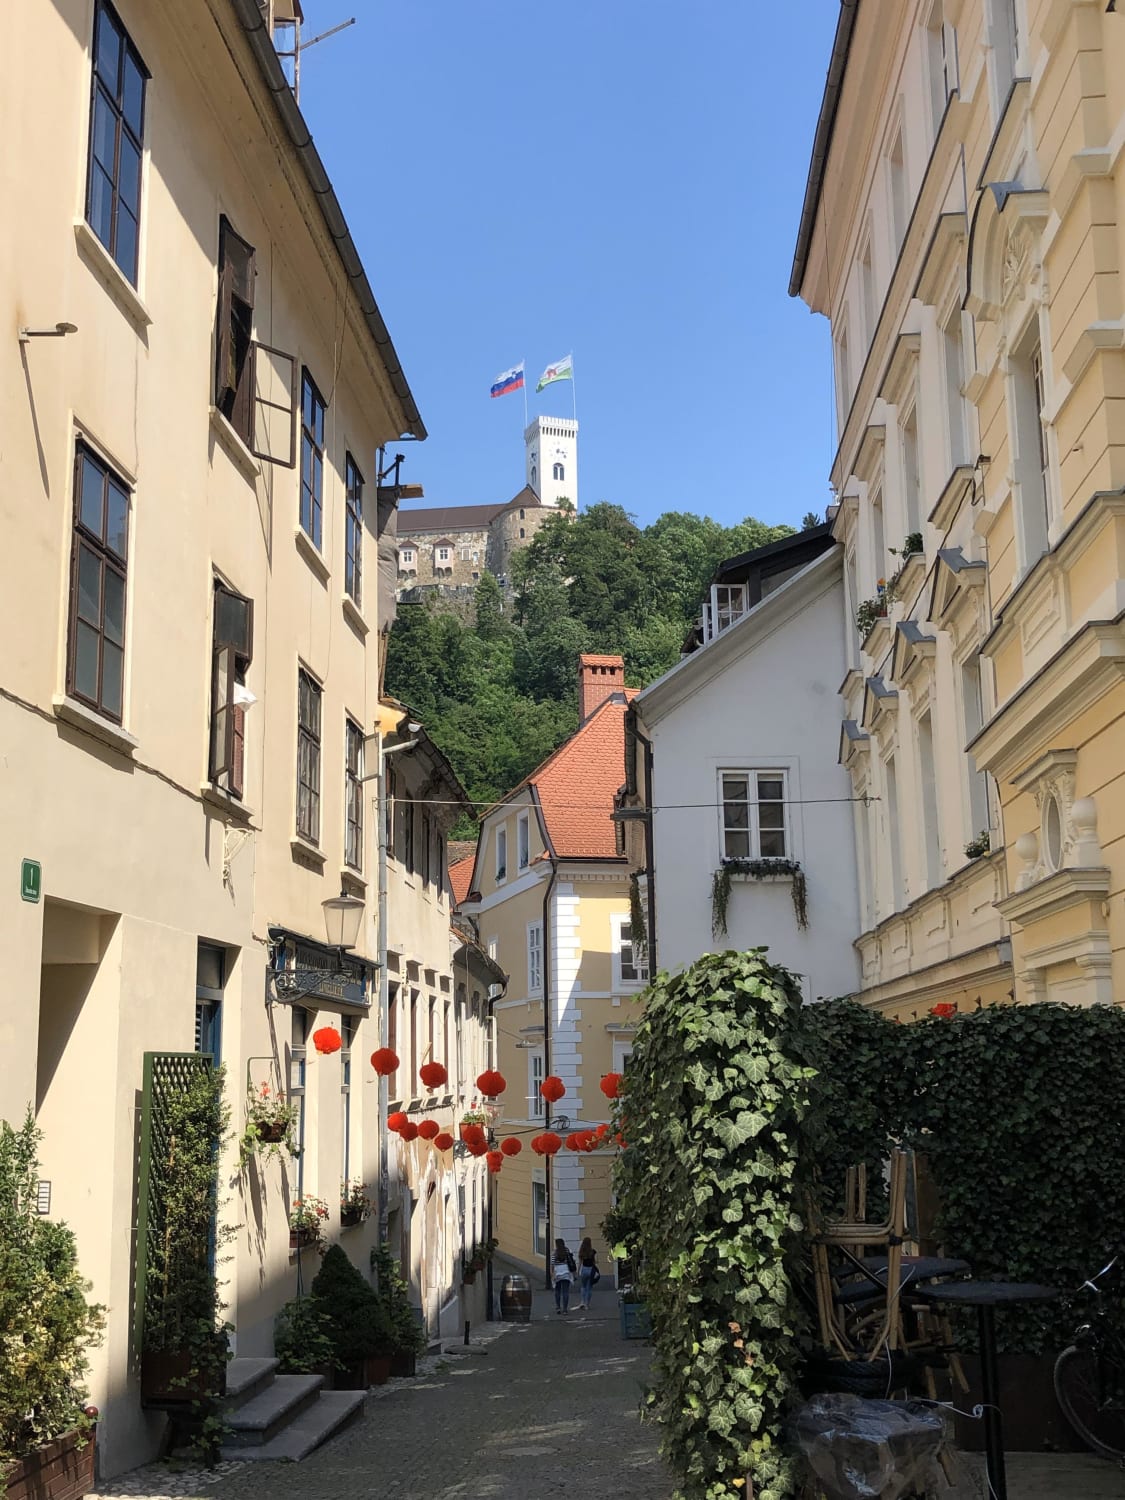 A random back street in Ljubljana, Slovenia